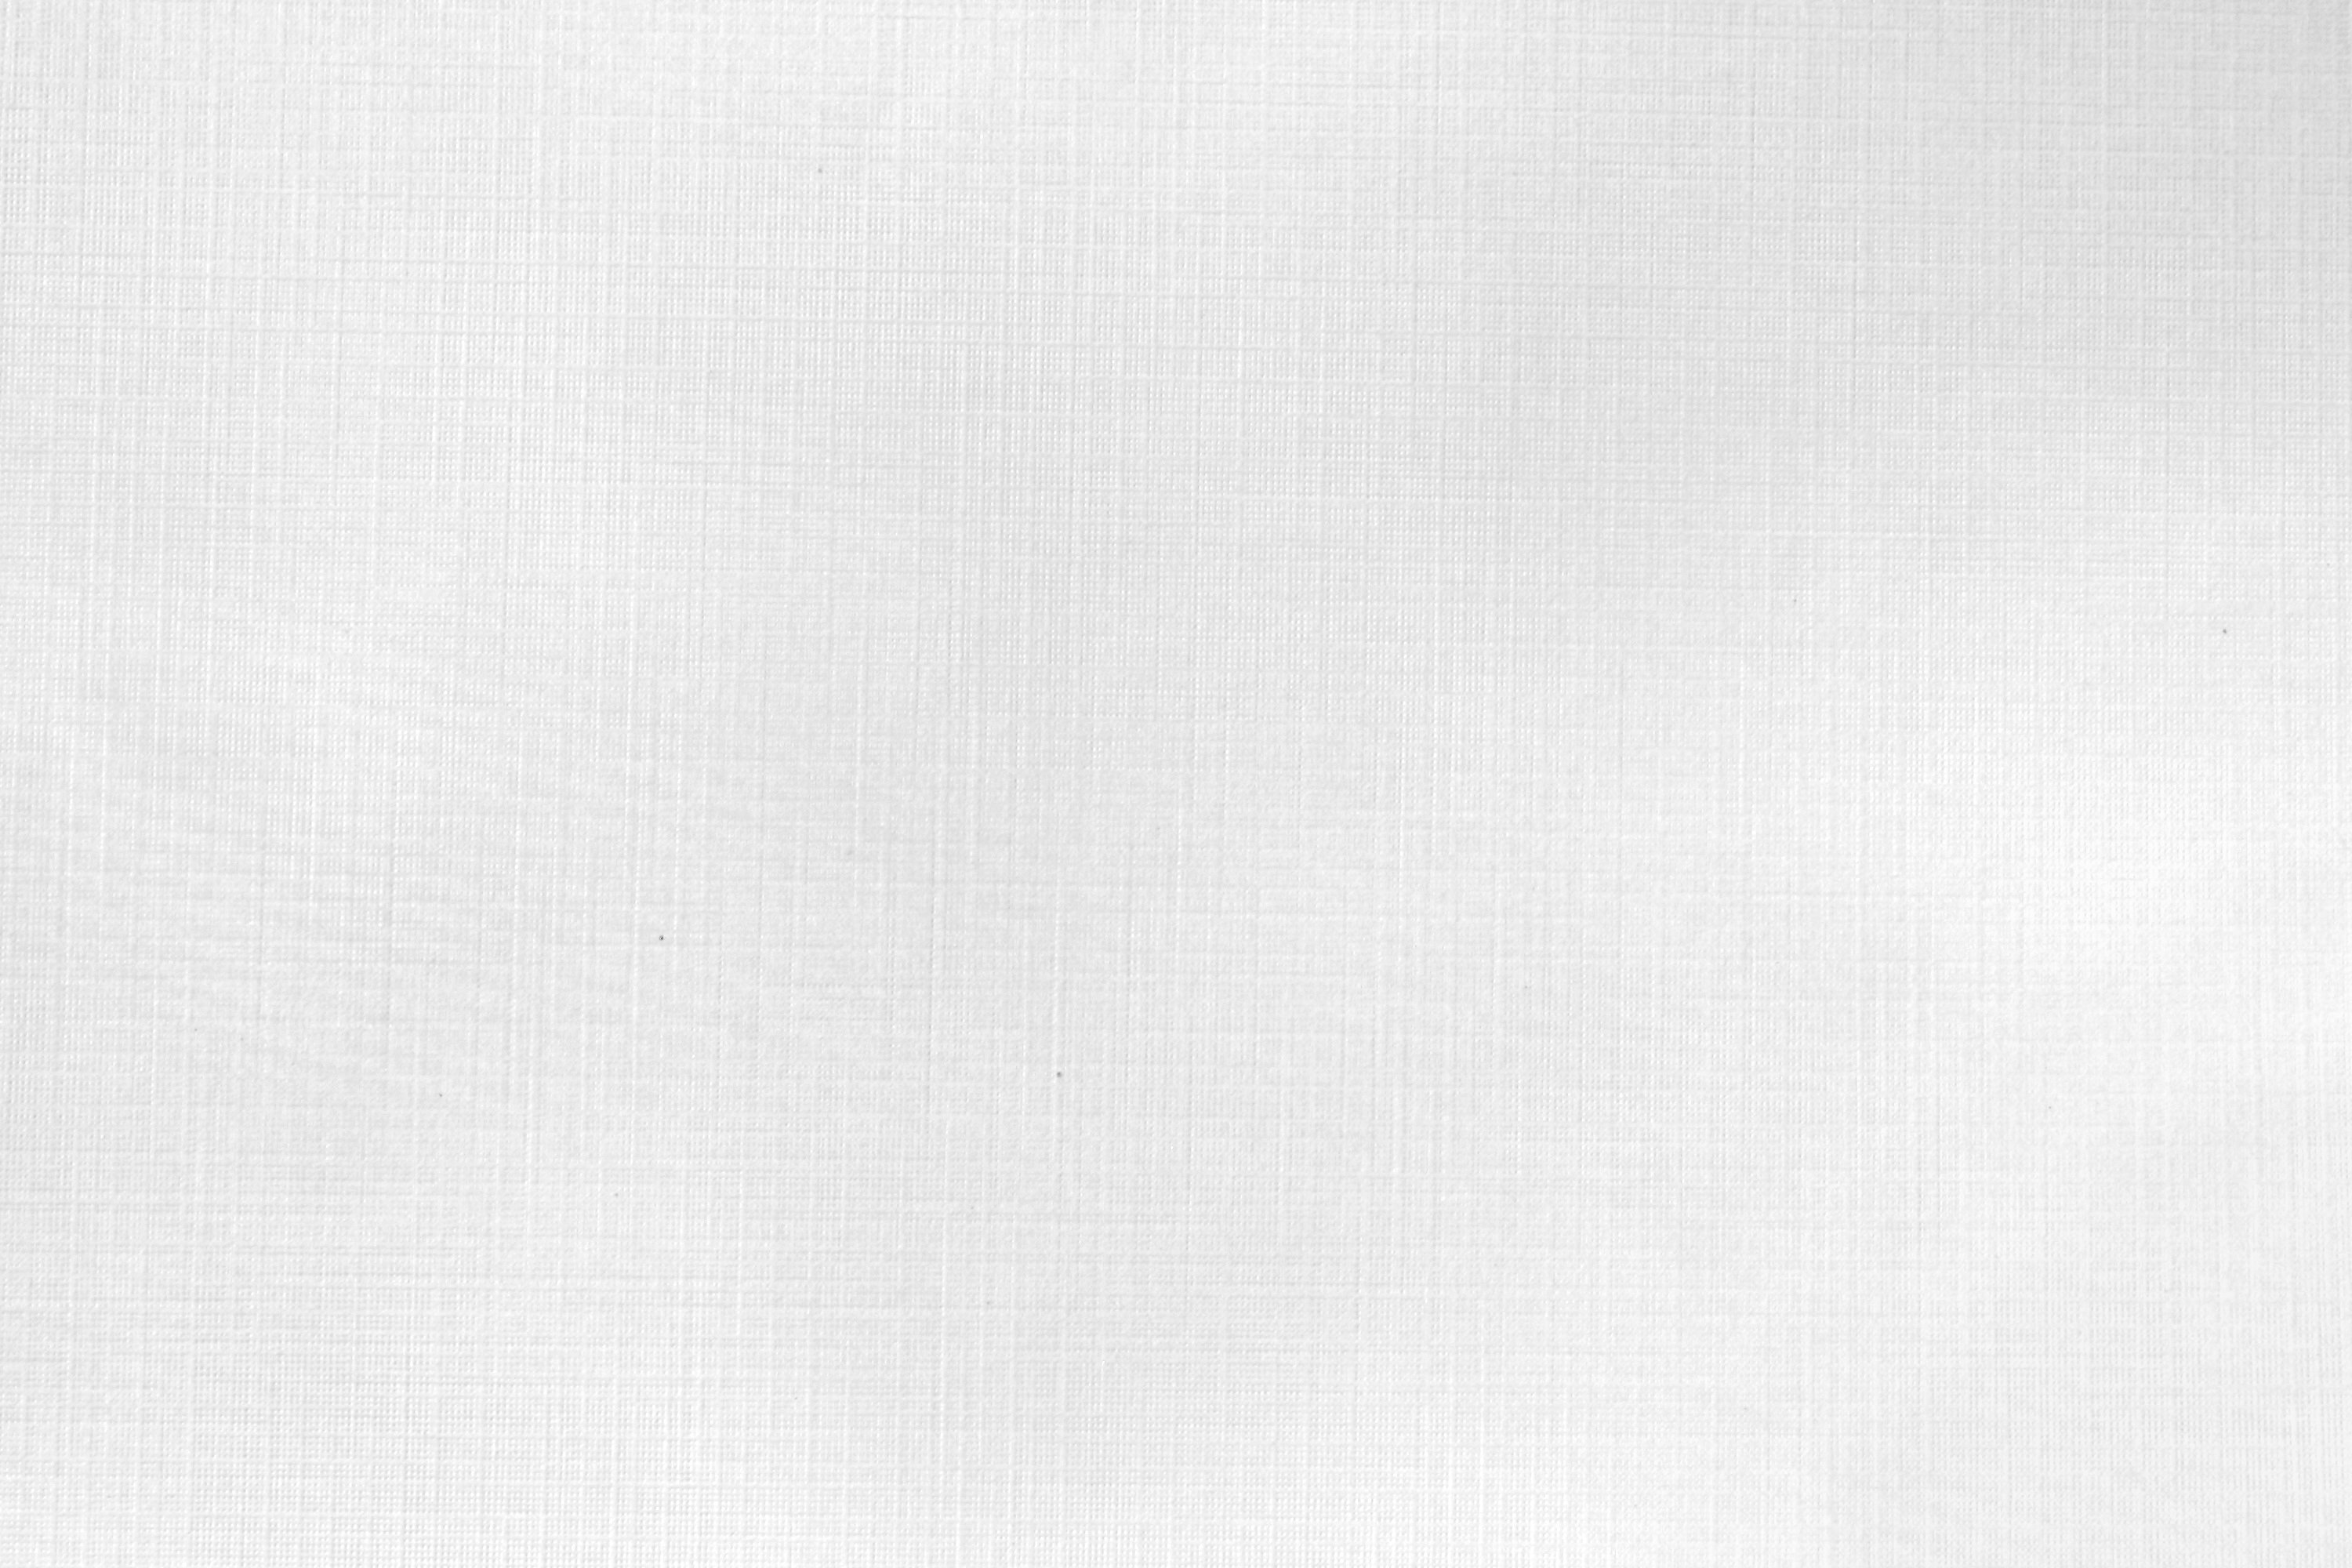 White Linen Paper Texture Picture Free Photograph Photos Public Domain